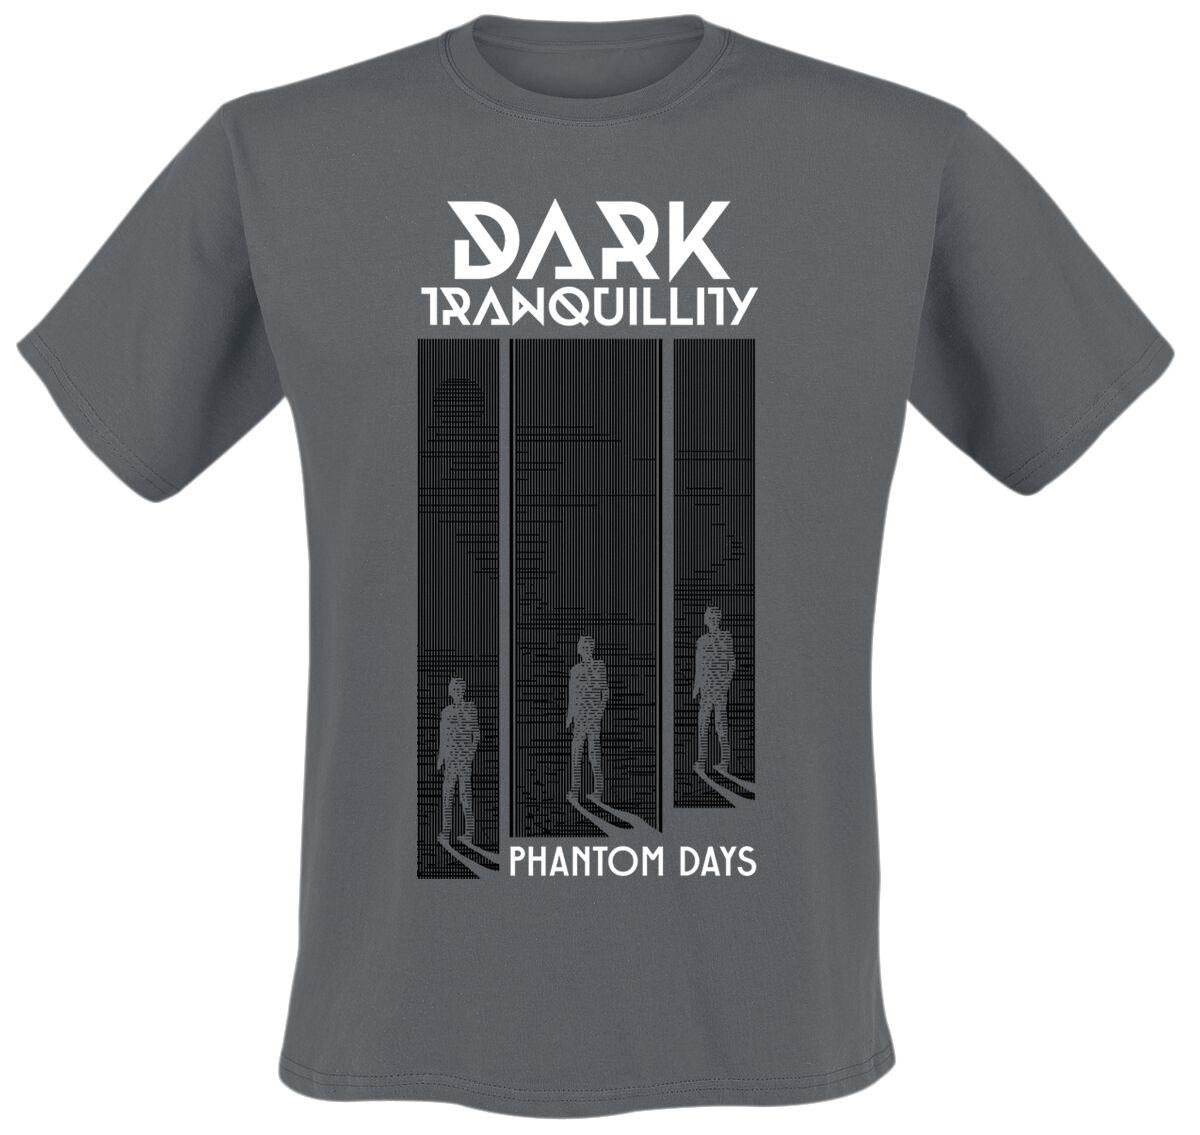 Dark Tranquillity T-Shirt - Phantom Days - S bis XXL - für Männer - Größe S - dunkelgrau  - EMP exklusives Merchandise!